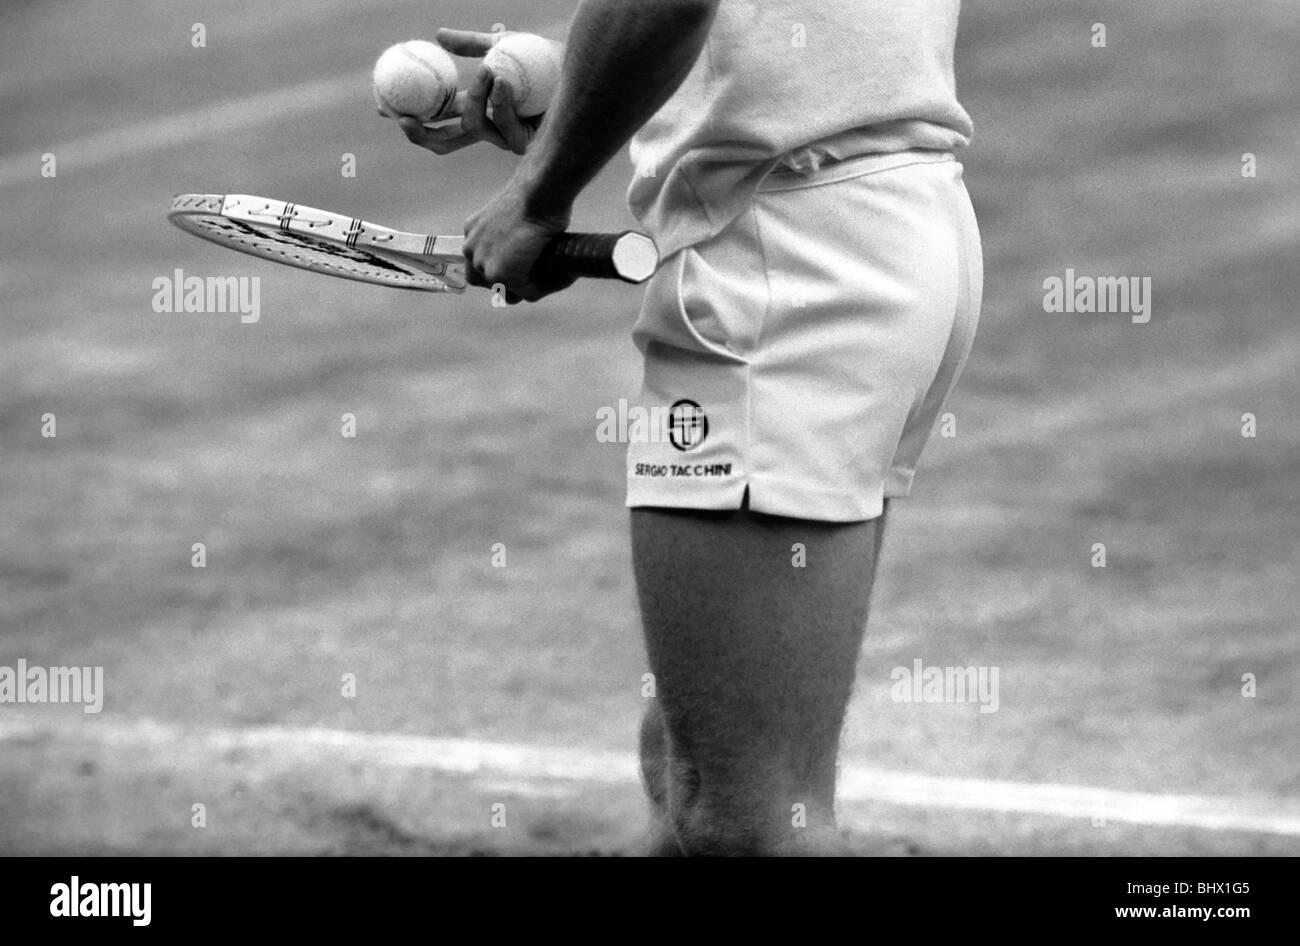 Wimbledon Tennis: Men's Finals 1981: John McEnroe v Bjorn Borg. John McEnroe in action on the centre court July 1981 Stock Photo